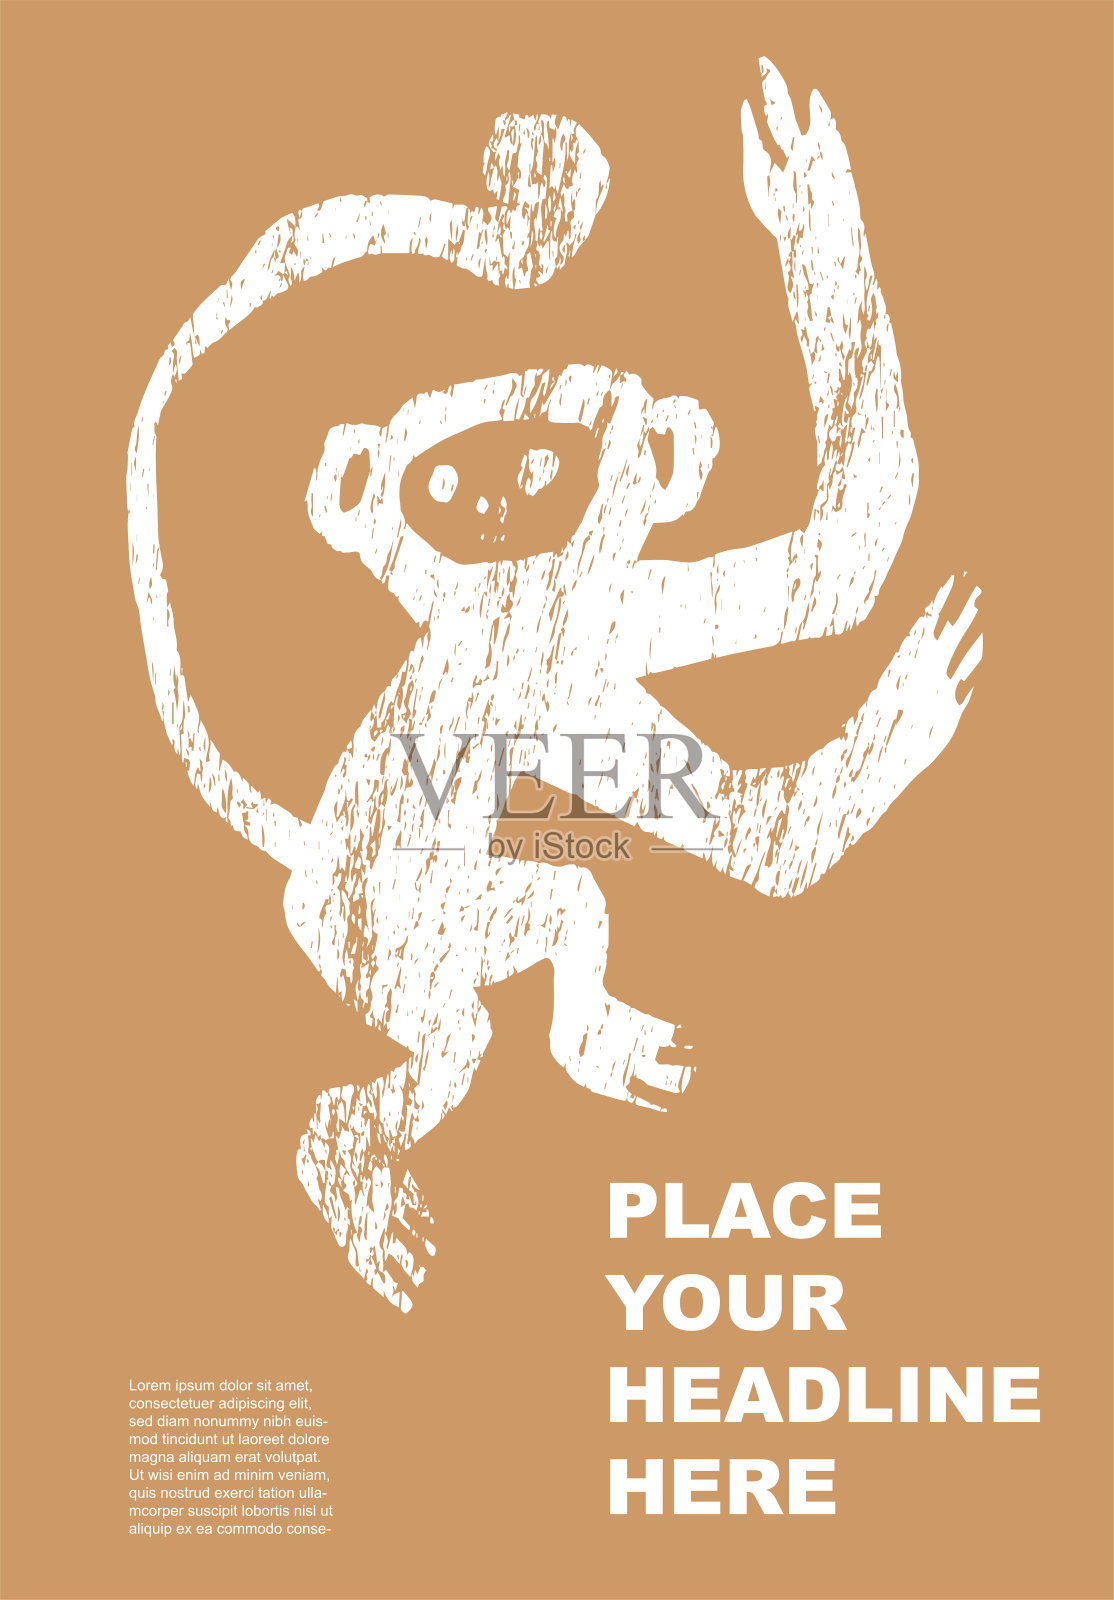 猴子壁纸【2】猴子壁纸图片_桌面壁纸图片_壁纸下载-元气壁纸